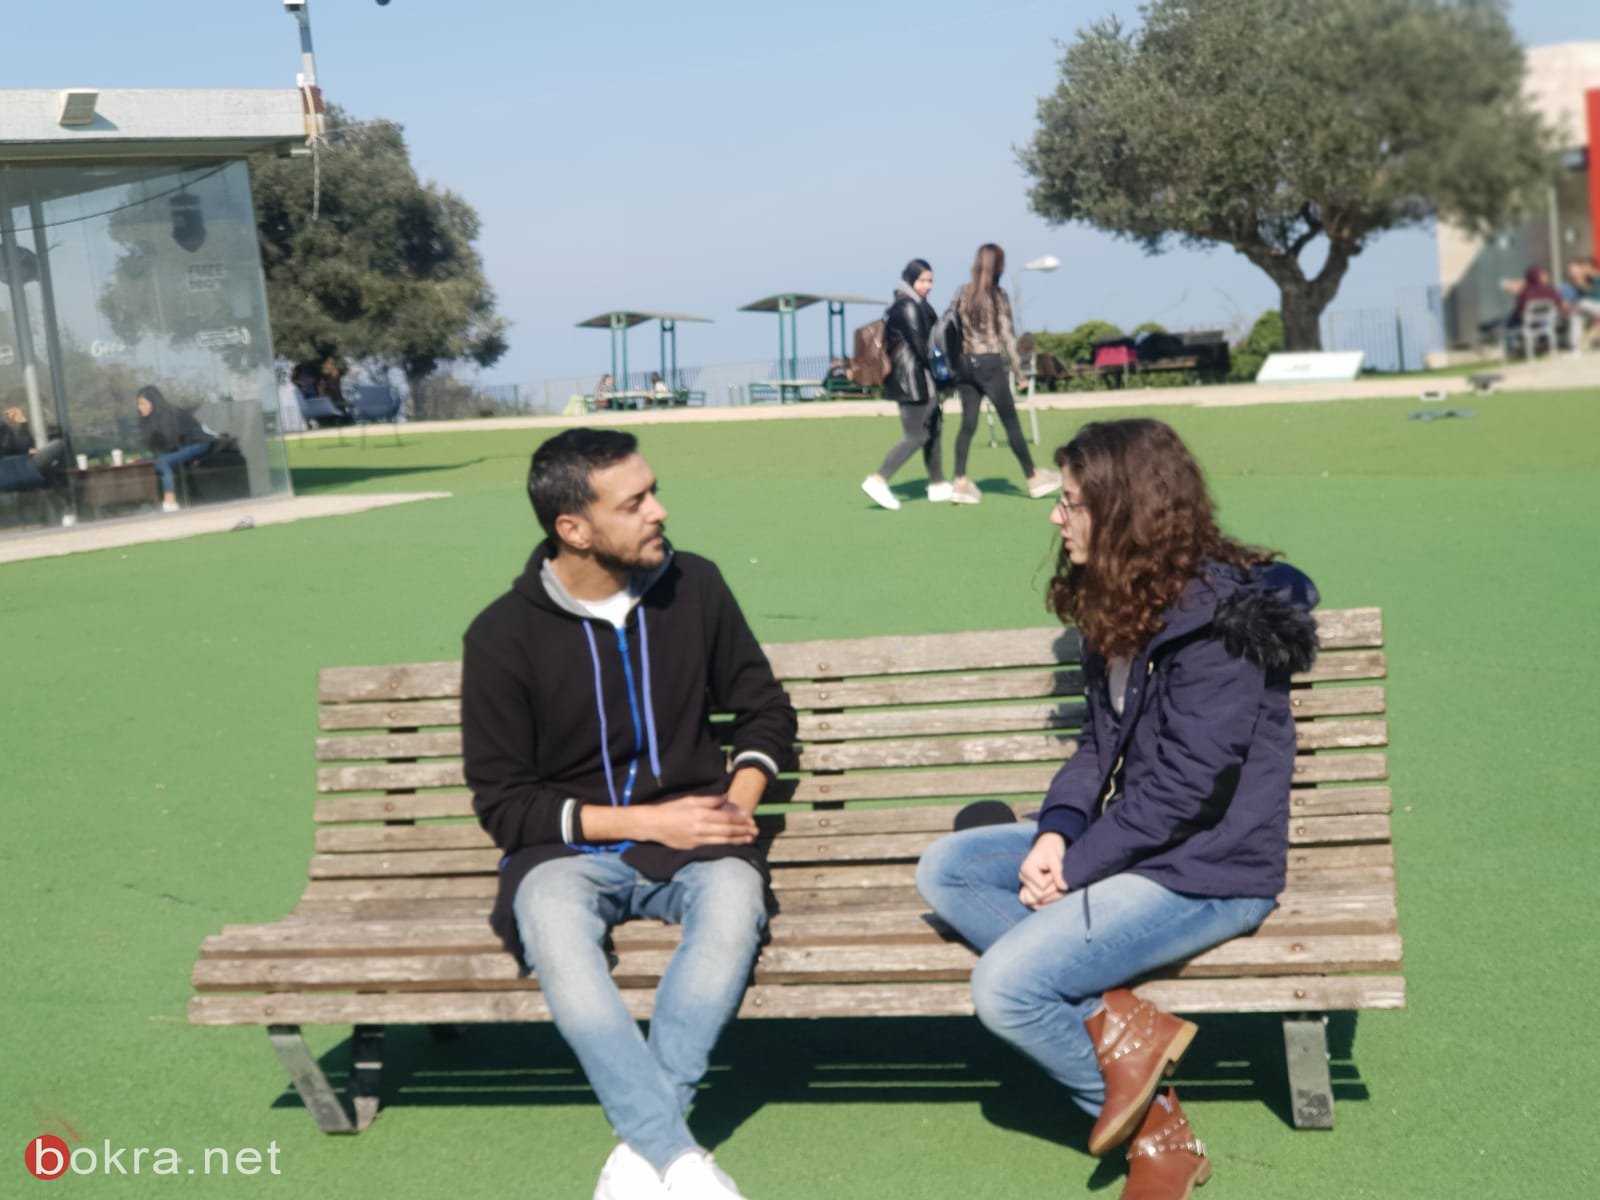 بدء الموسم الثاني من "قاعدين ع بنك"، شاهدوا لقاءنا مع طلاب جامعة حيفا-7